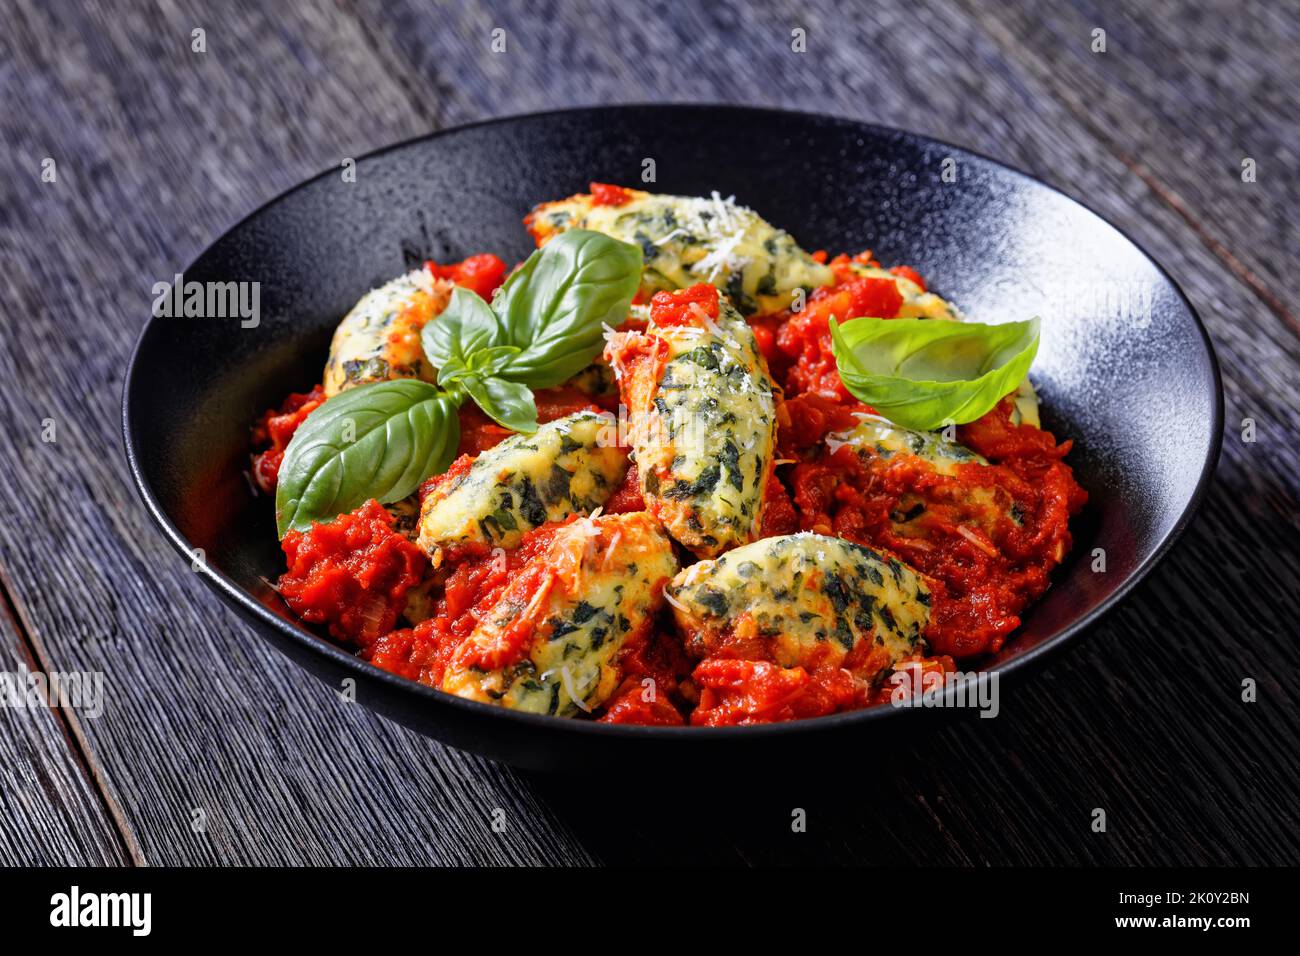 Boulettes de ricotta aux épinards italiens, sauce tomate aux herbes et parmesan râpé dans un bol noir sur une table en bois sombre Banque D'Images